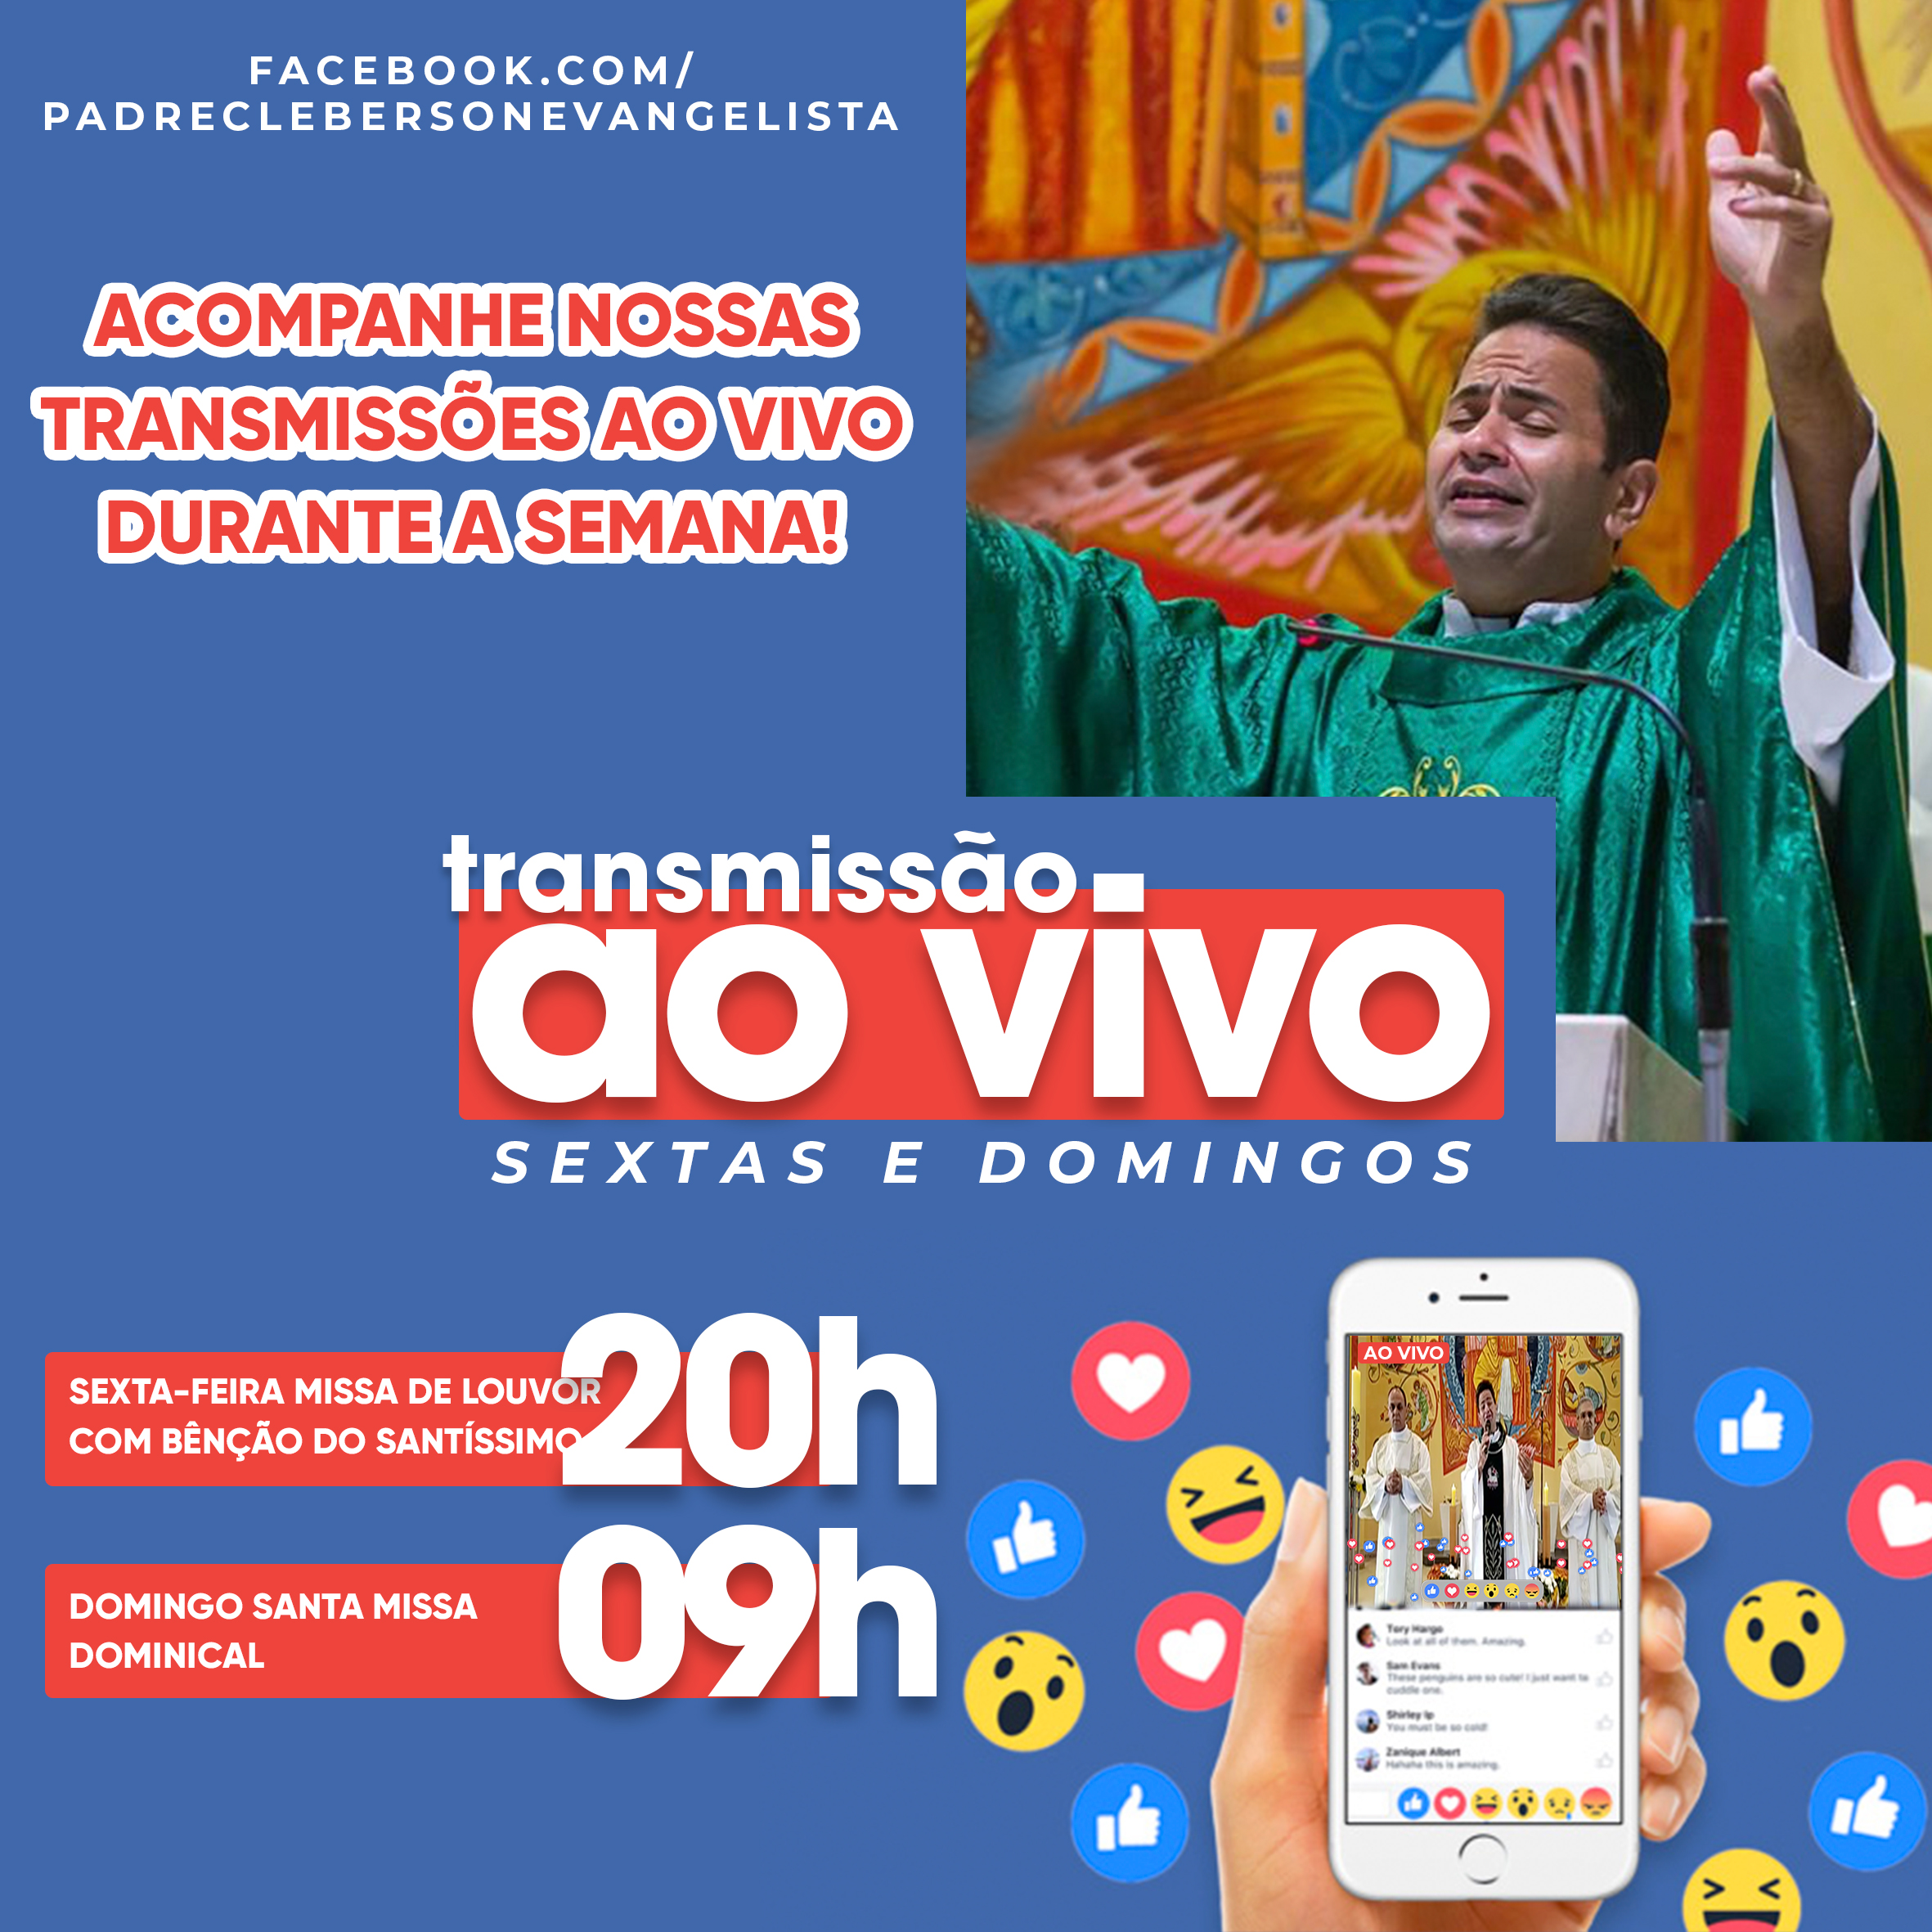 Horários de transmissões ao vivo na Paróquia São Rafael Arcanjo